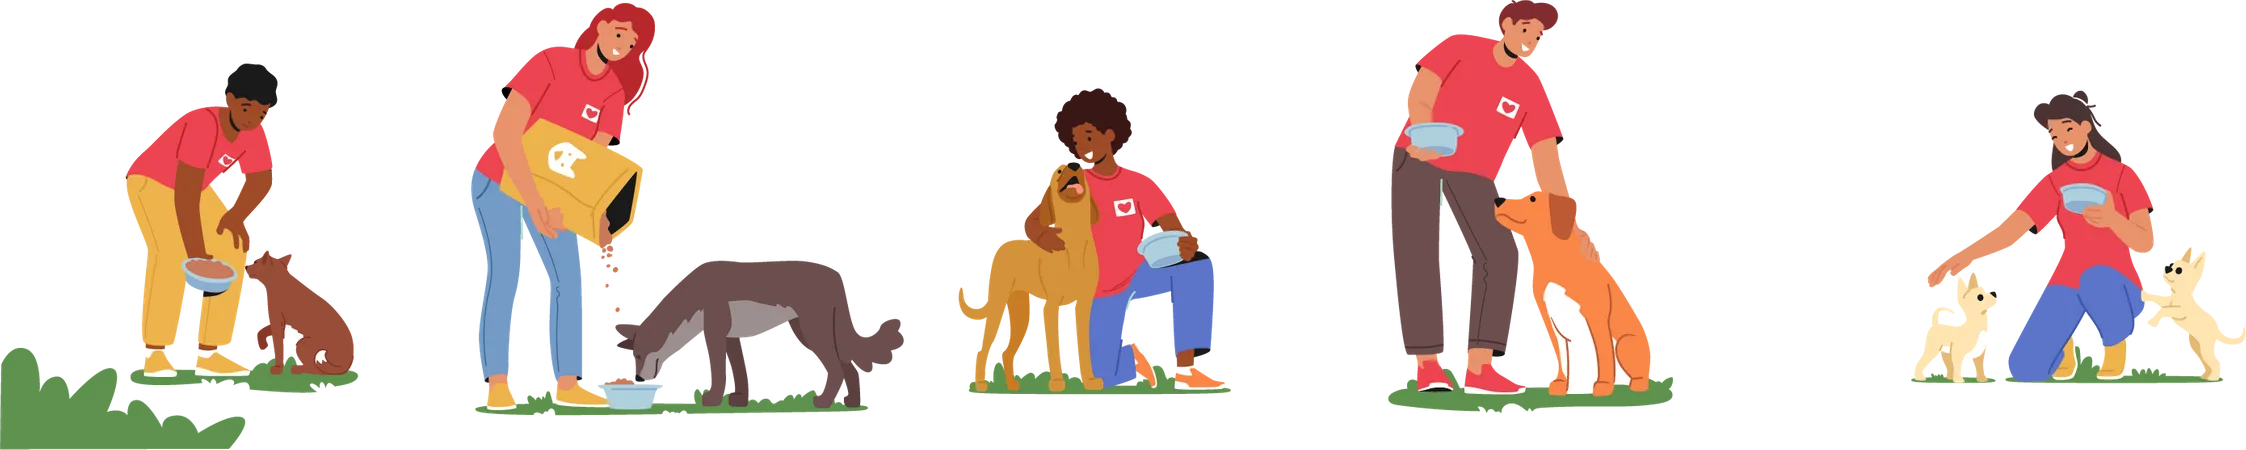 Volunteers feeding dogs Illustration